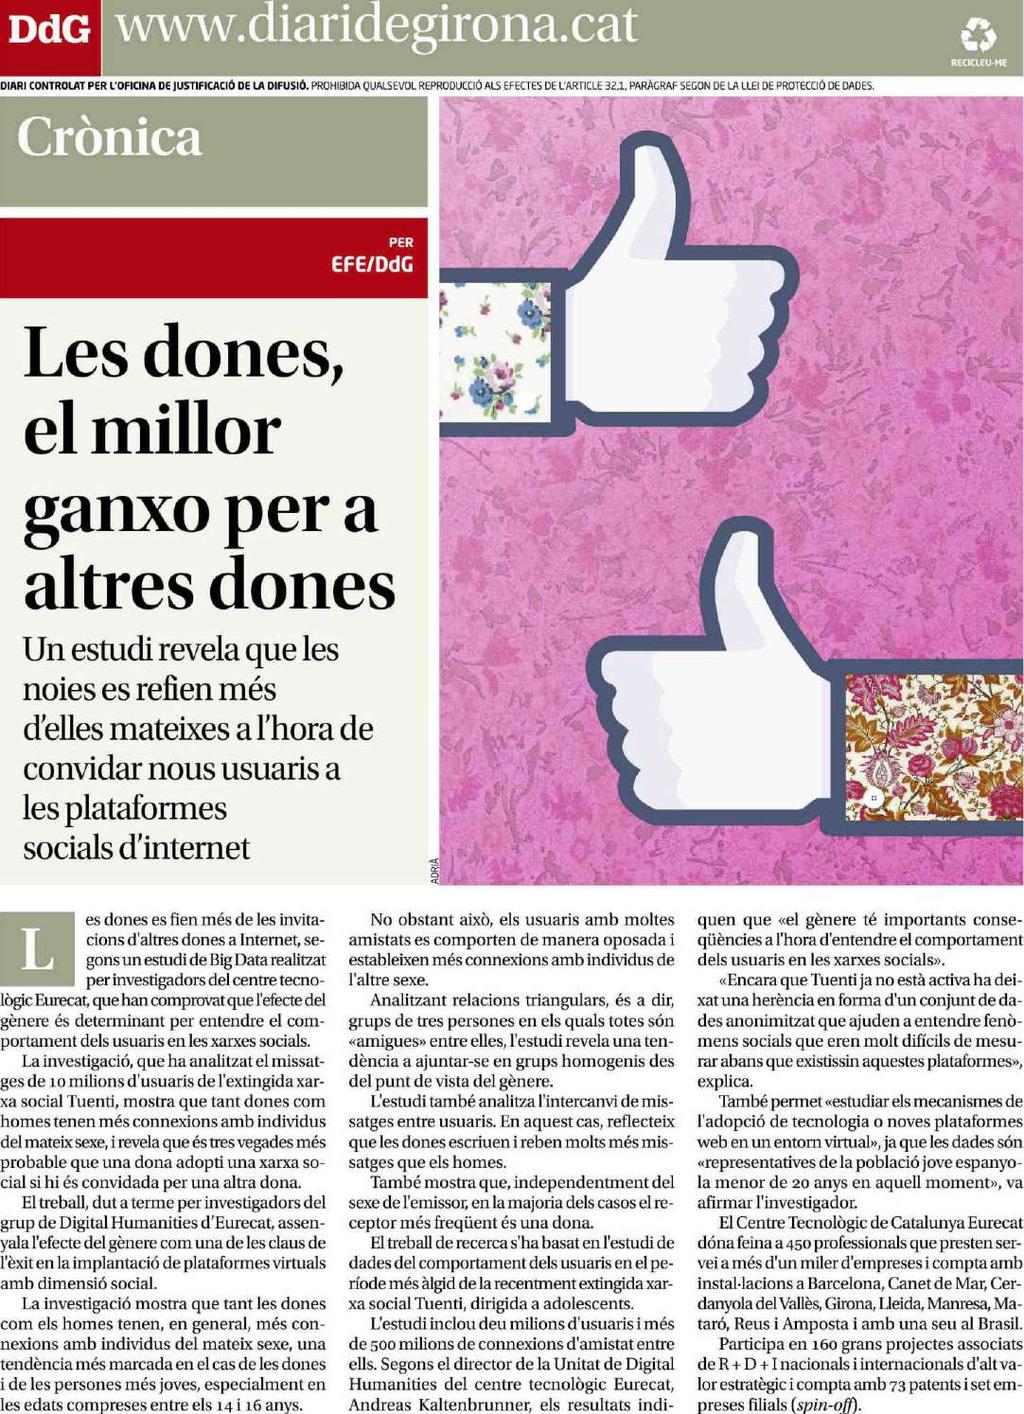 Diari de Girona Gerona Prensa: Tirada: Difusión: Diaria 7.665 Ejemplares 5.